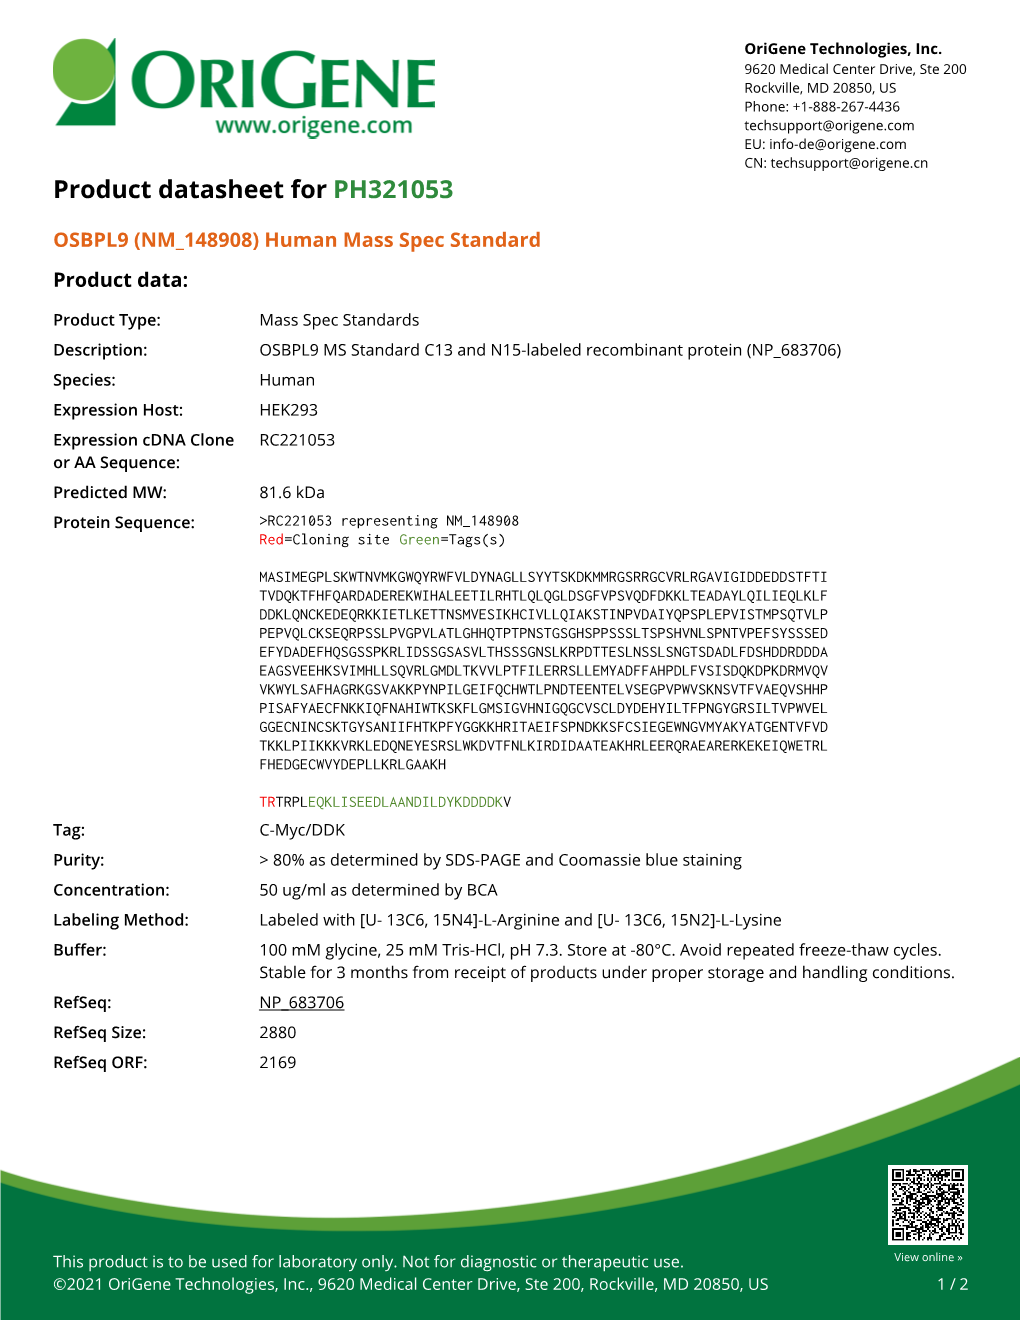 OSBPL9 (NM 148908) Human Mass Spec Standard – PH321053